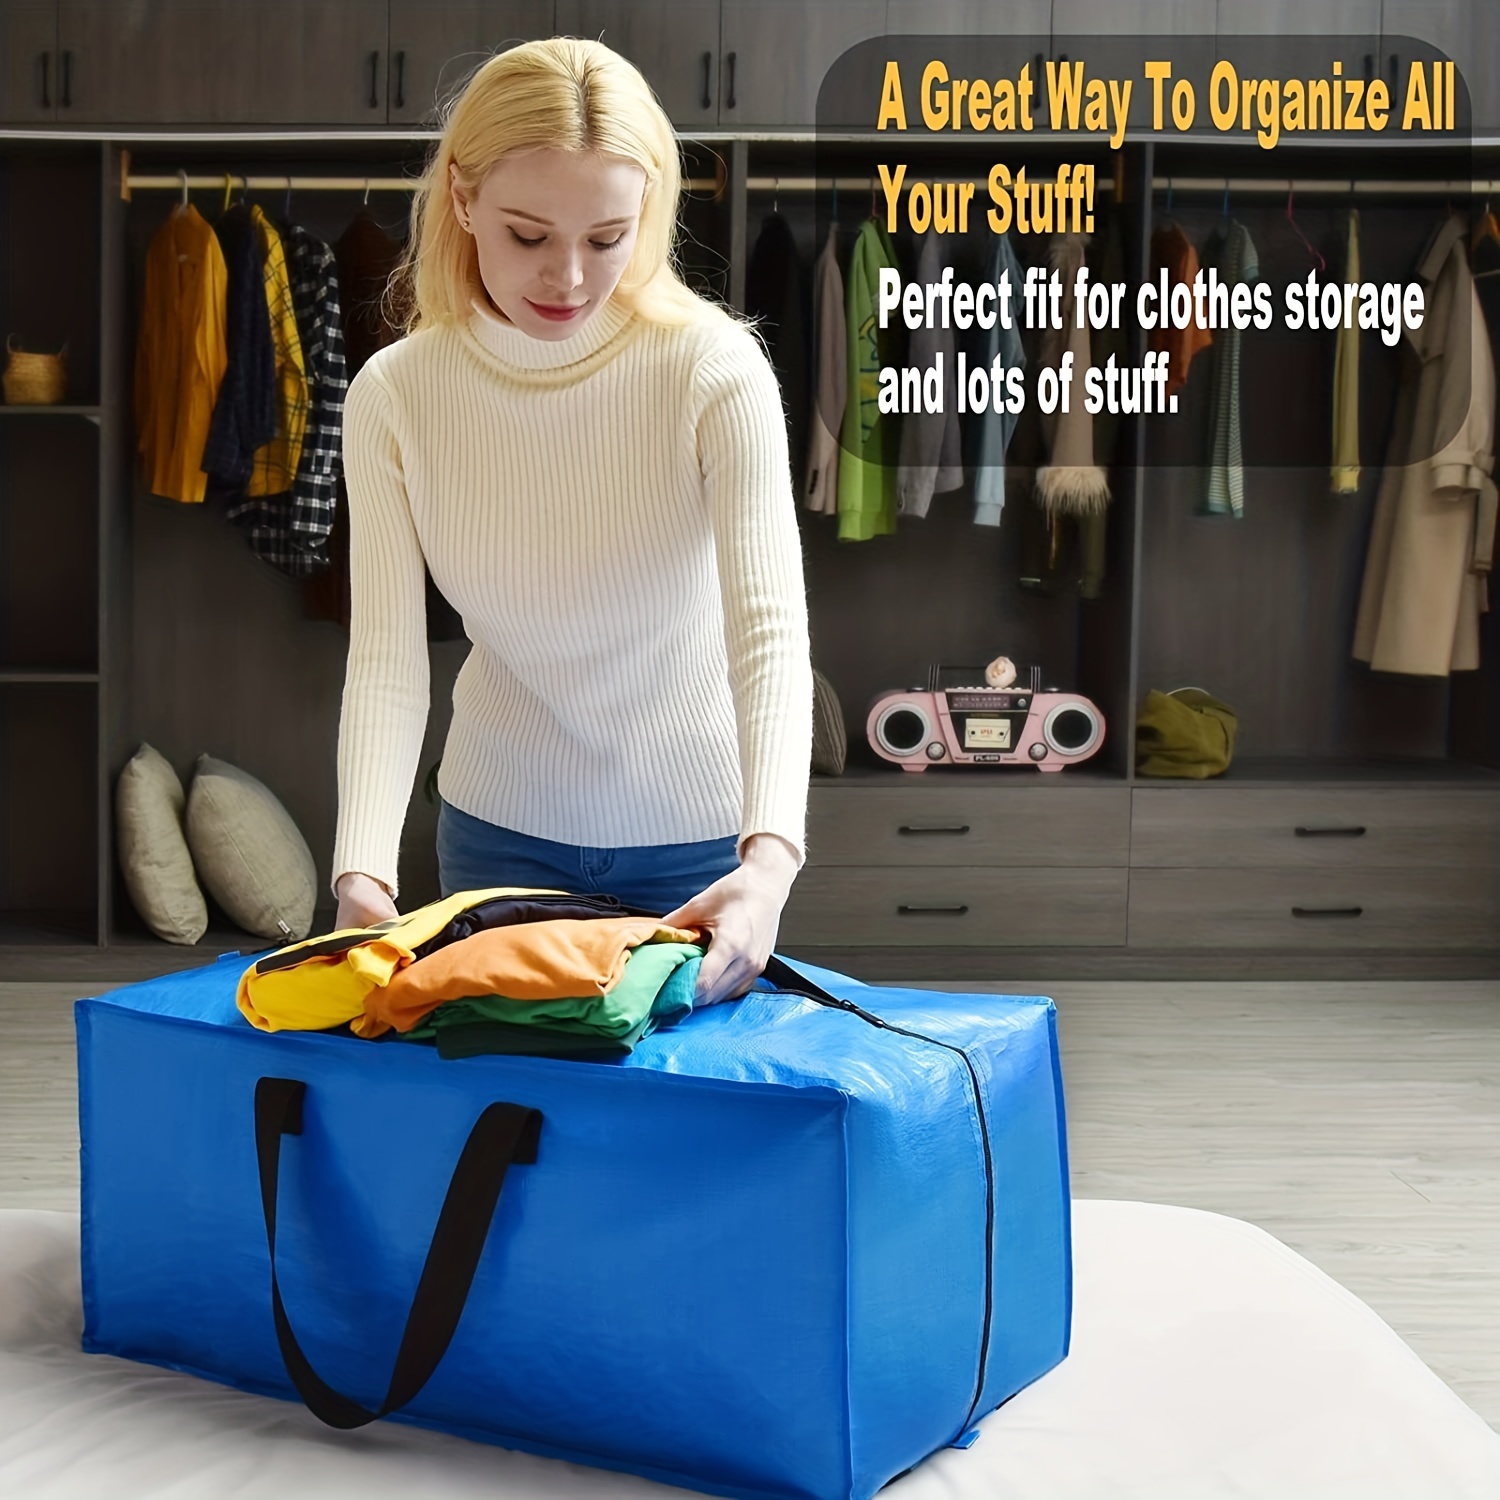 2x IKEA Frakta Large Blue Storage Carrier Bags Shopping Laundry Moving |  eBay